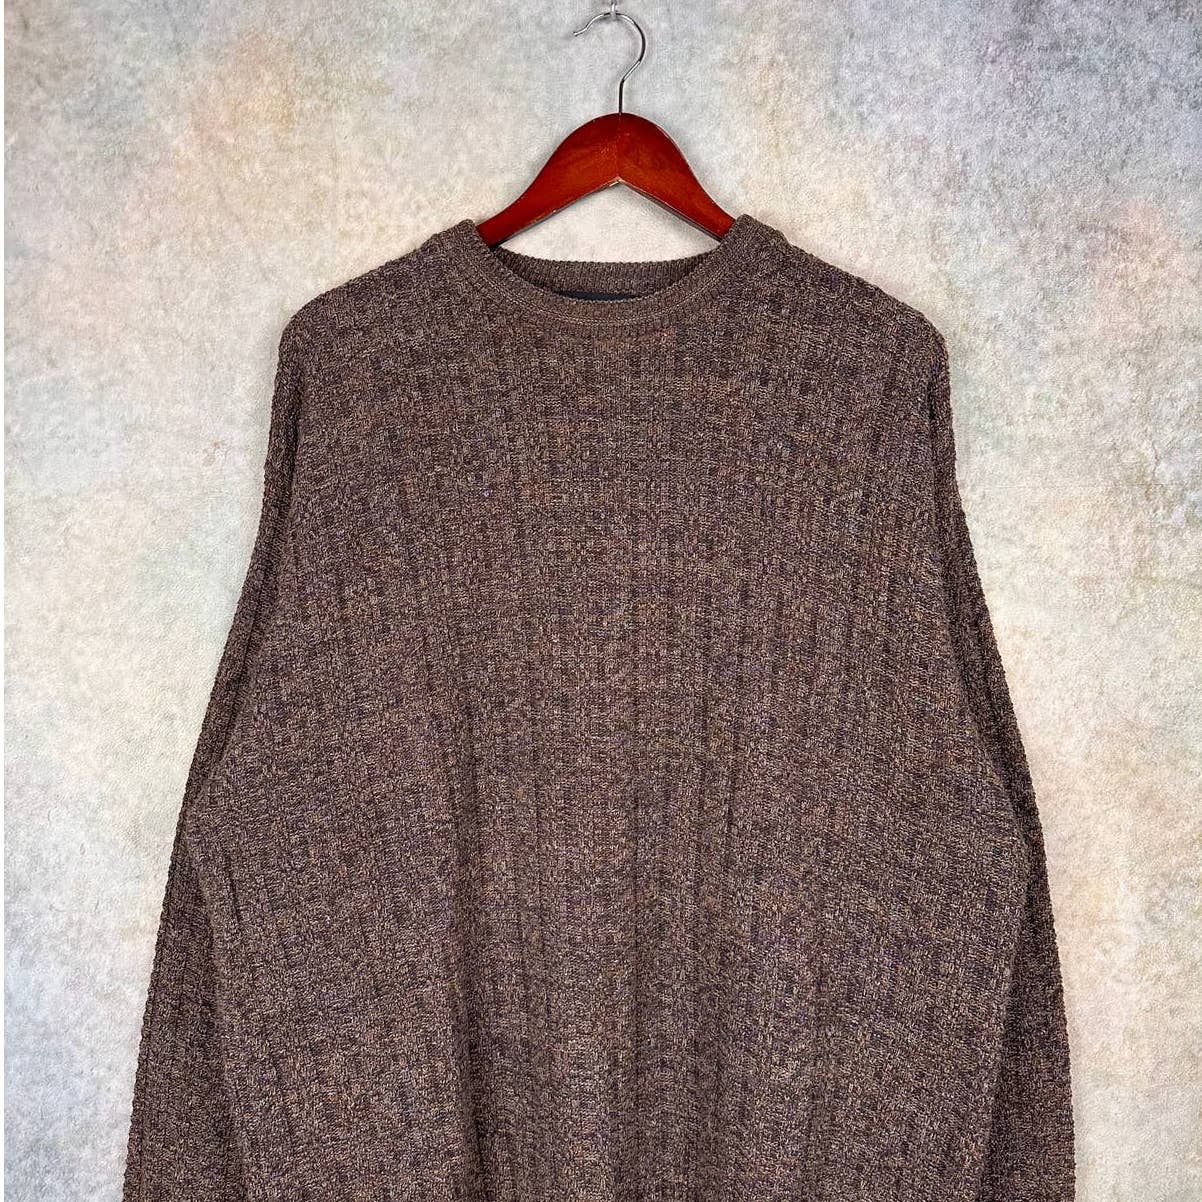 Vintage Knit Sweater XL